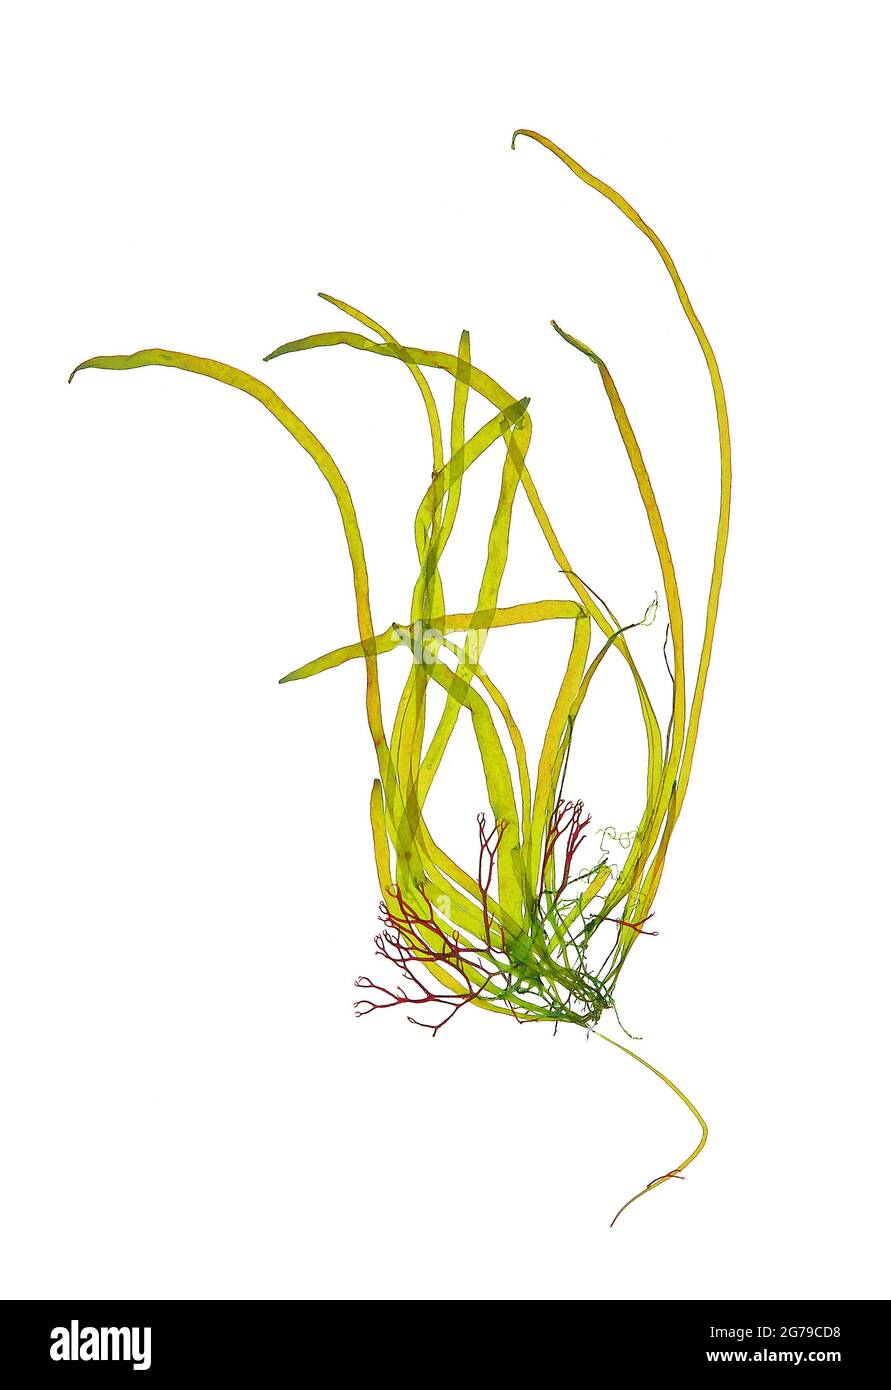 Scytosiphon lomentaria (Lyngbye) Link, Brown Alga (Phaeophyceae) Stock Photo